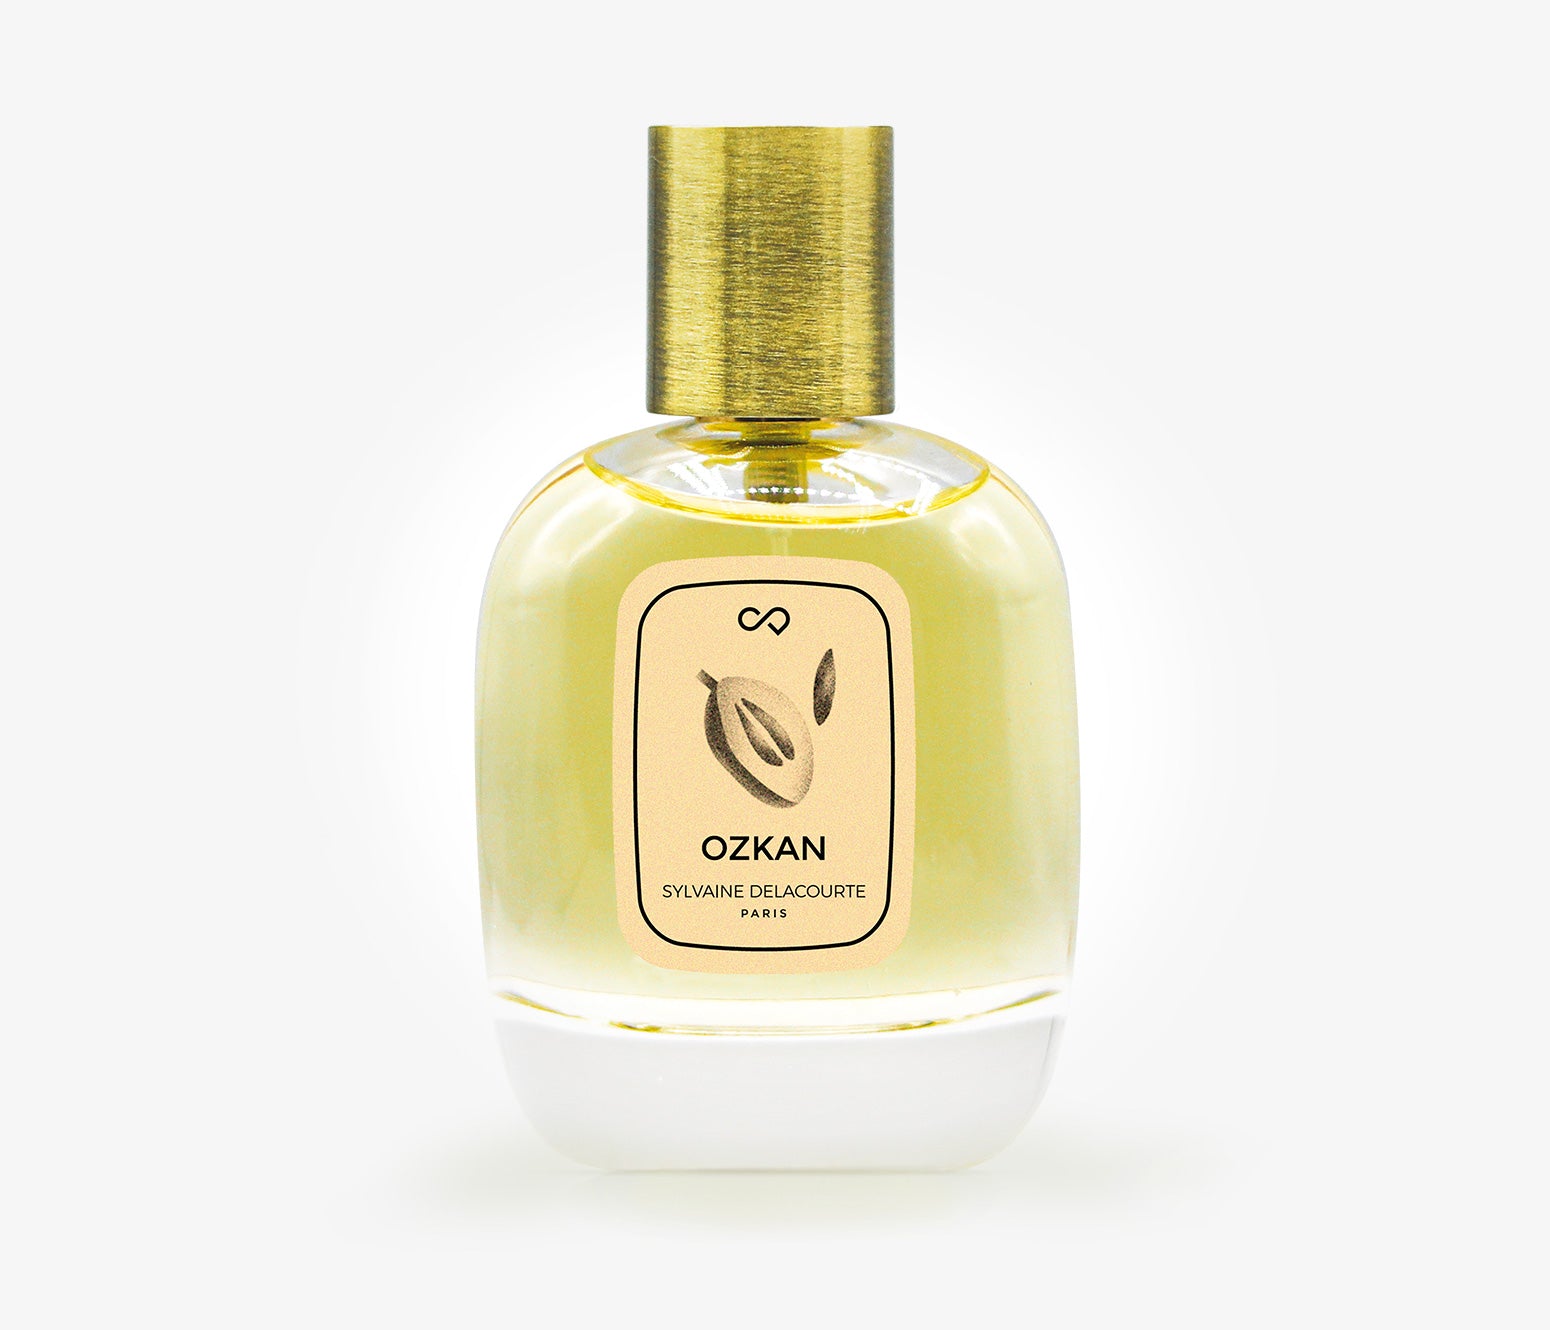 Sylvaine Delacourte - Ozkan - 30ml - HTD001 - product image - Fragrance - Les Senteurs